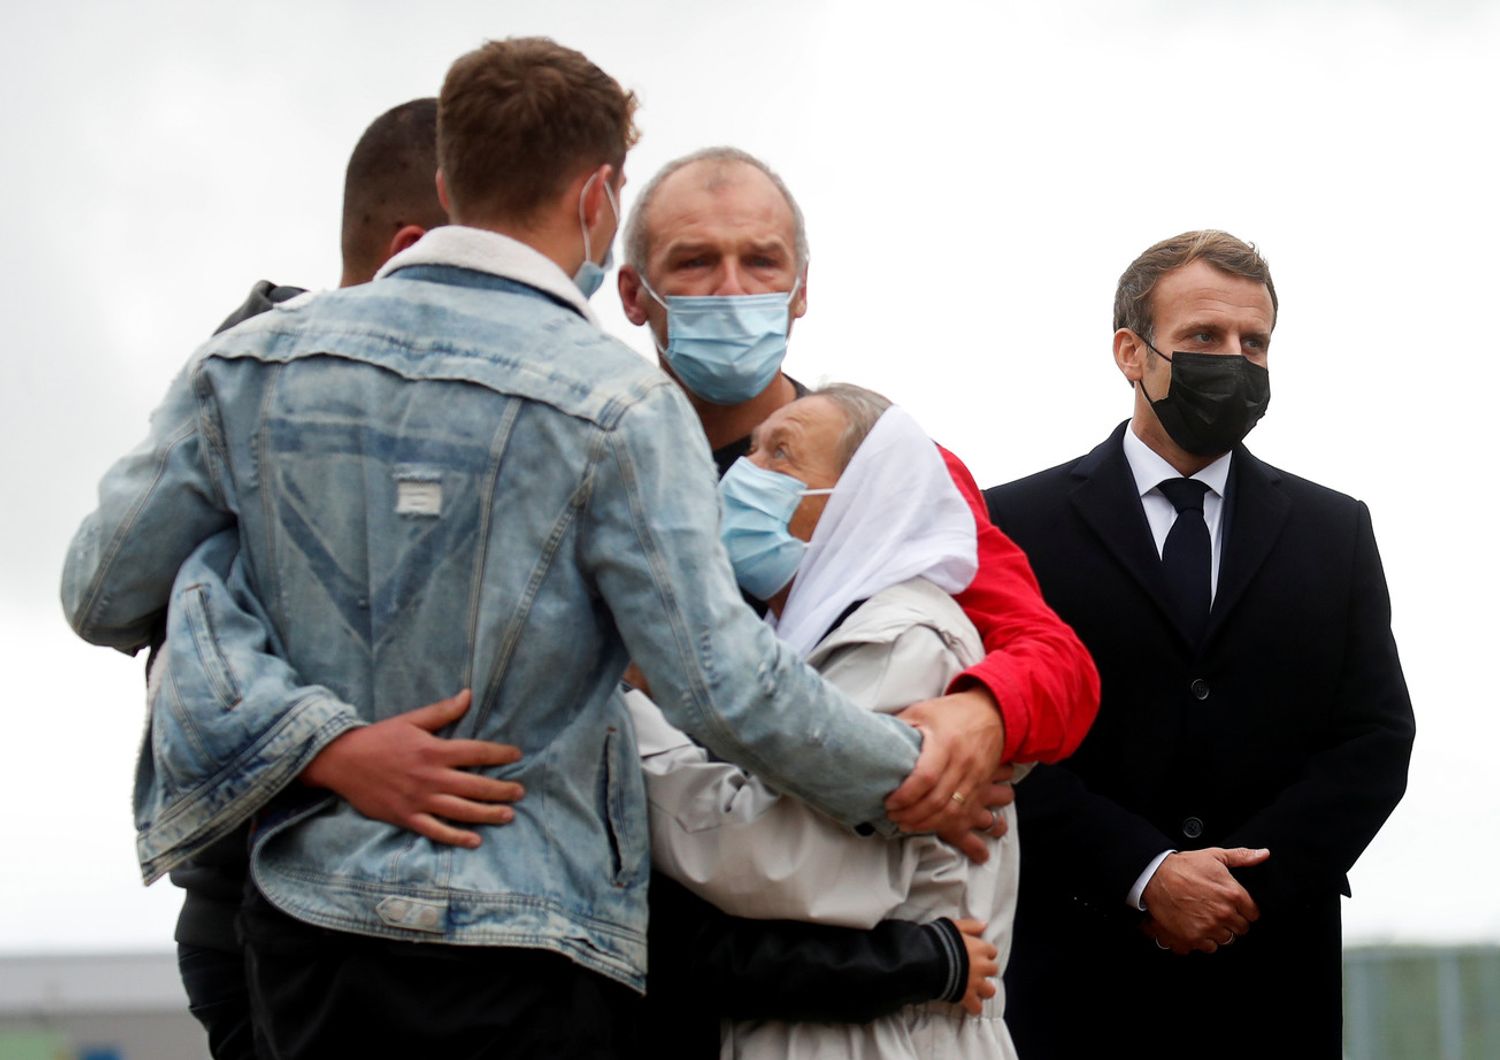 Emmanuel Macron con la famiglia dell'ostaggio francese liberato in Mali all'arrivo di Sophie Petronin a Parigi